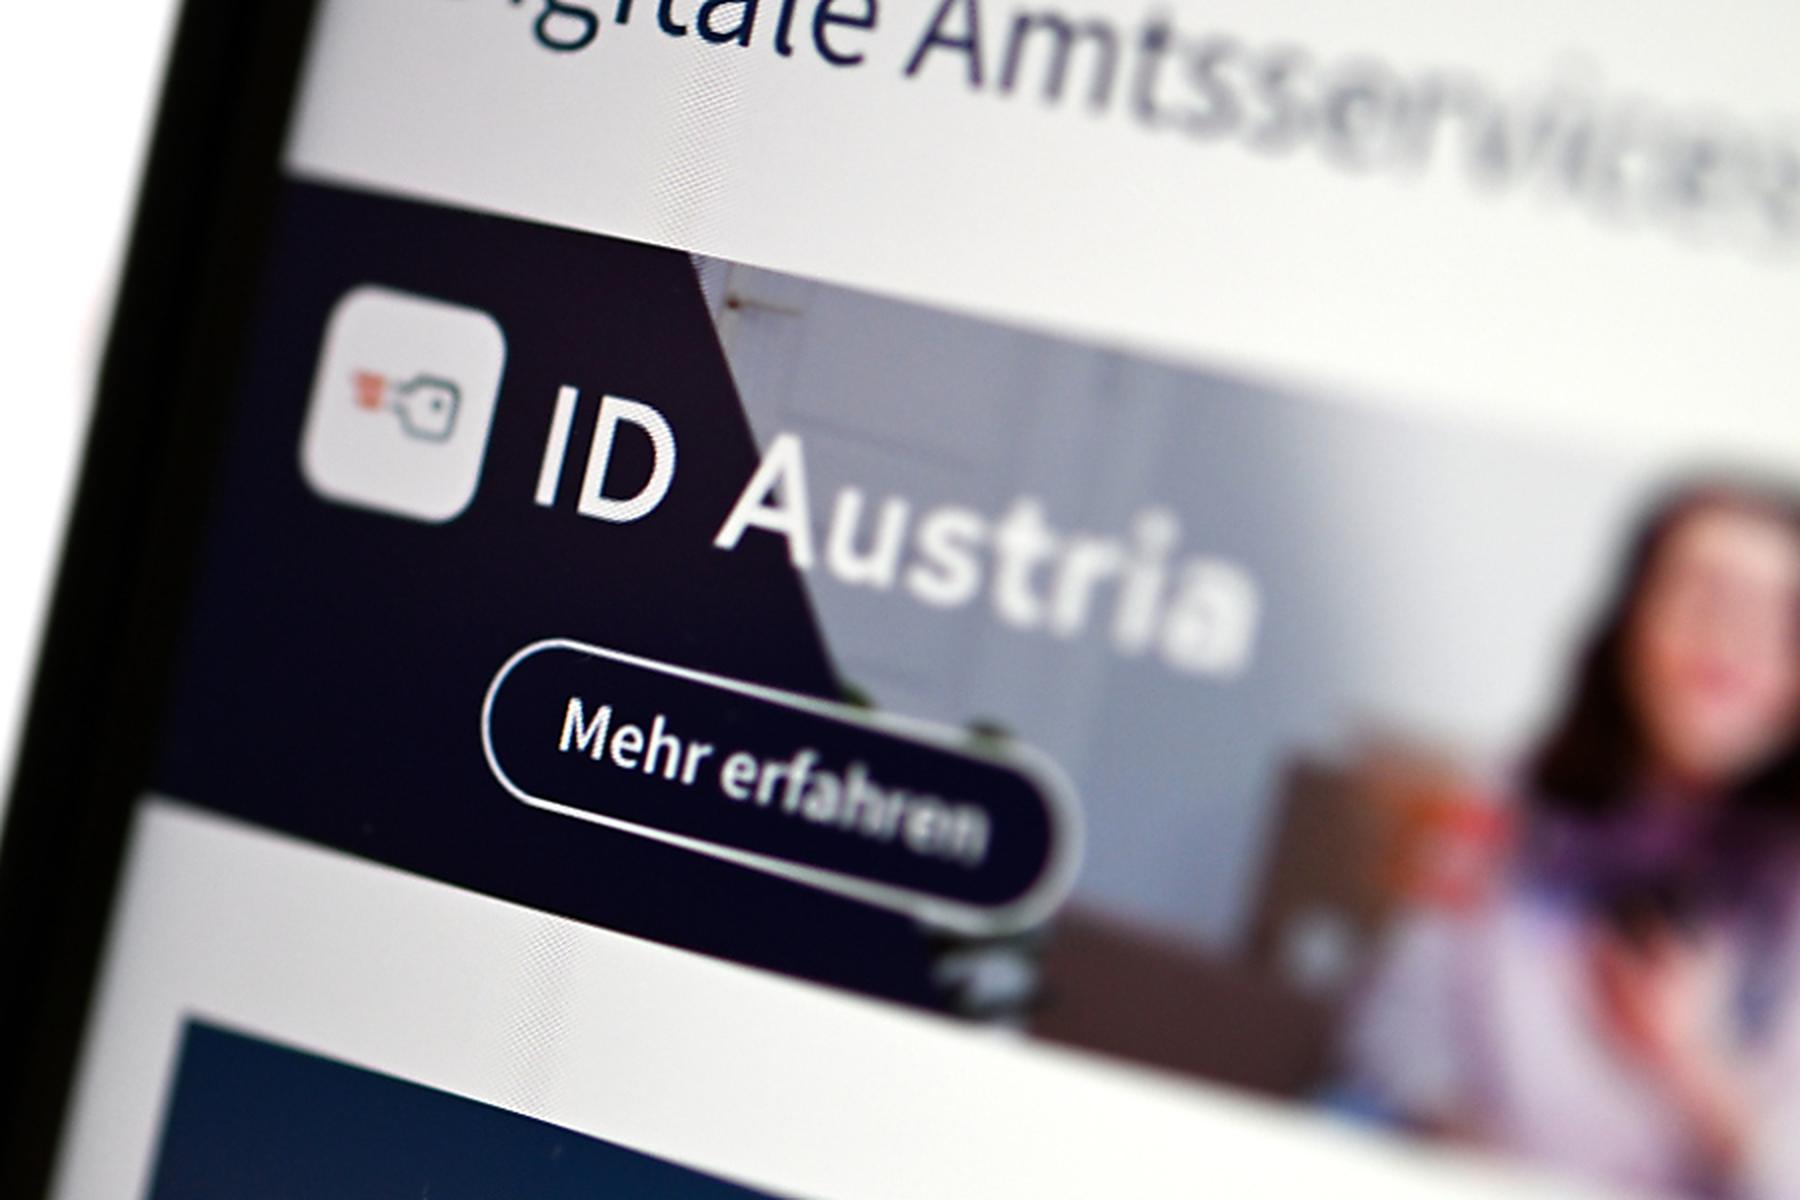 Wien: Android-Version der ID Austria-App seit Tagen gestört